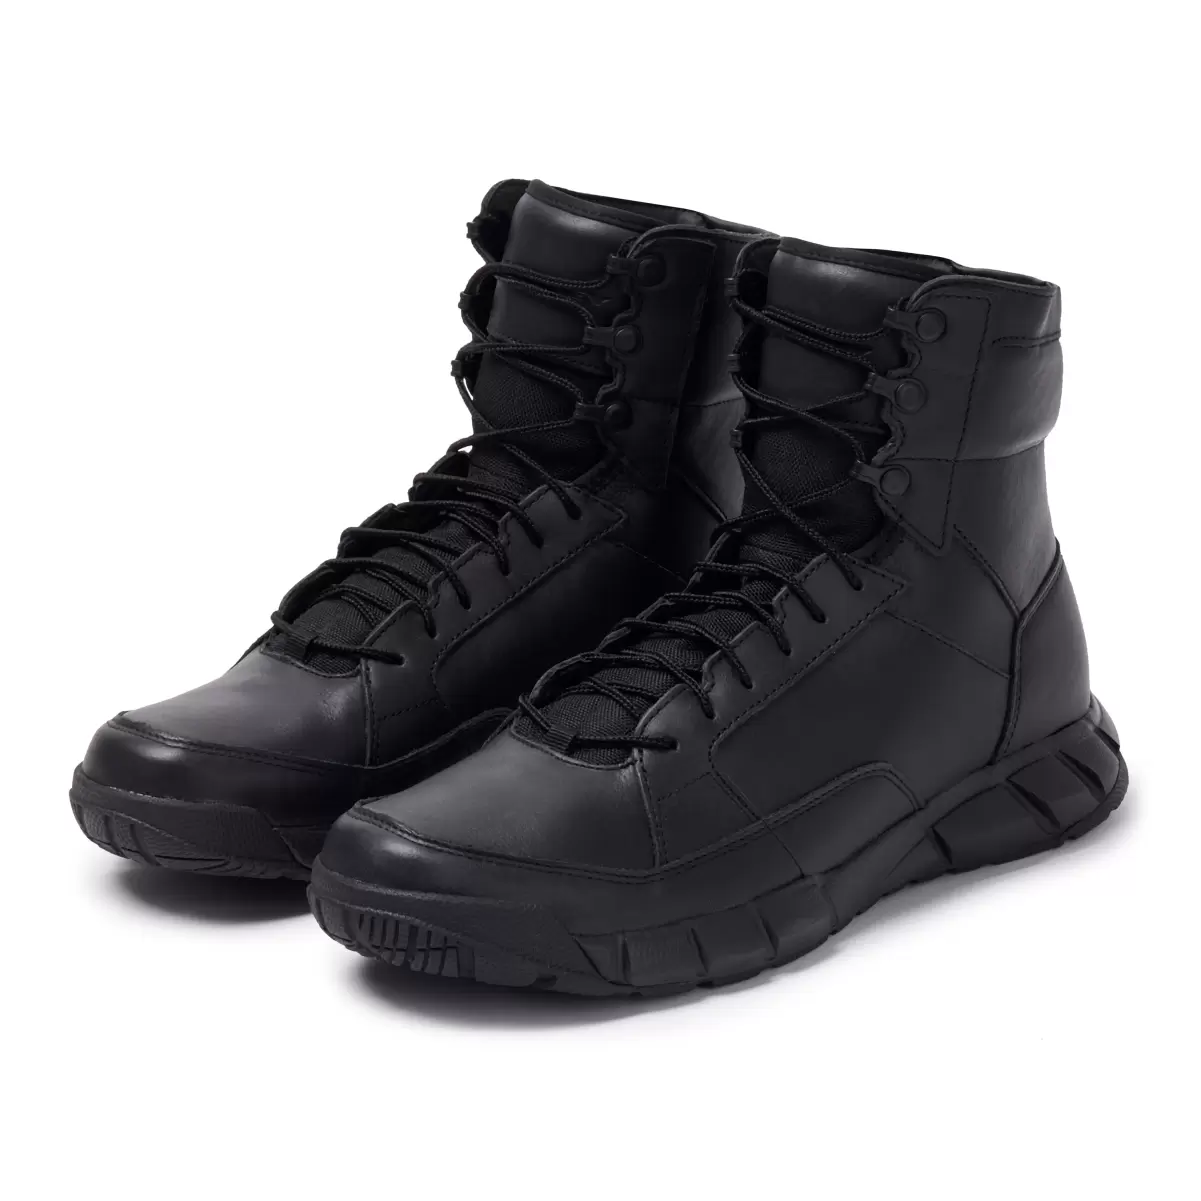 Footwear Black Light Assault Boot Leather Oakley Men - 1